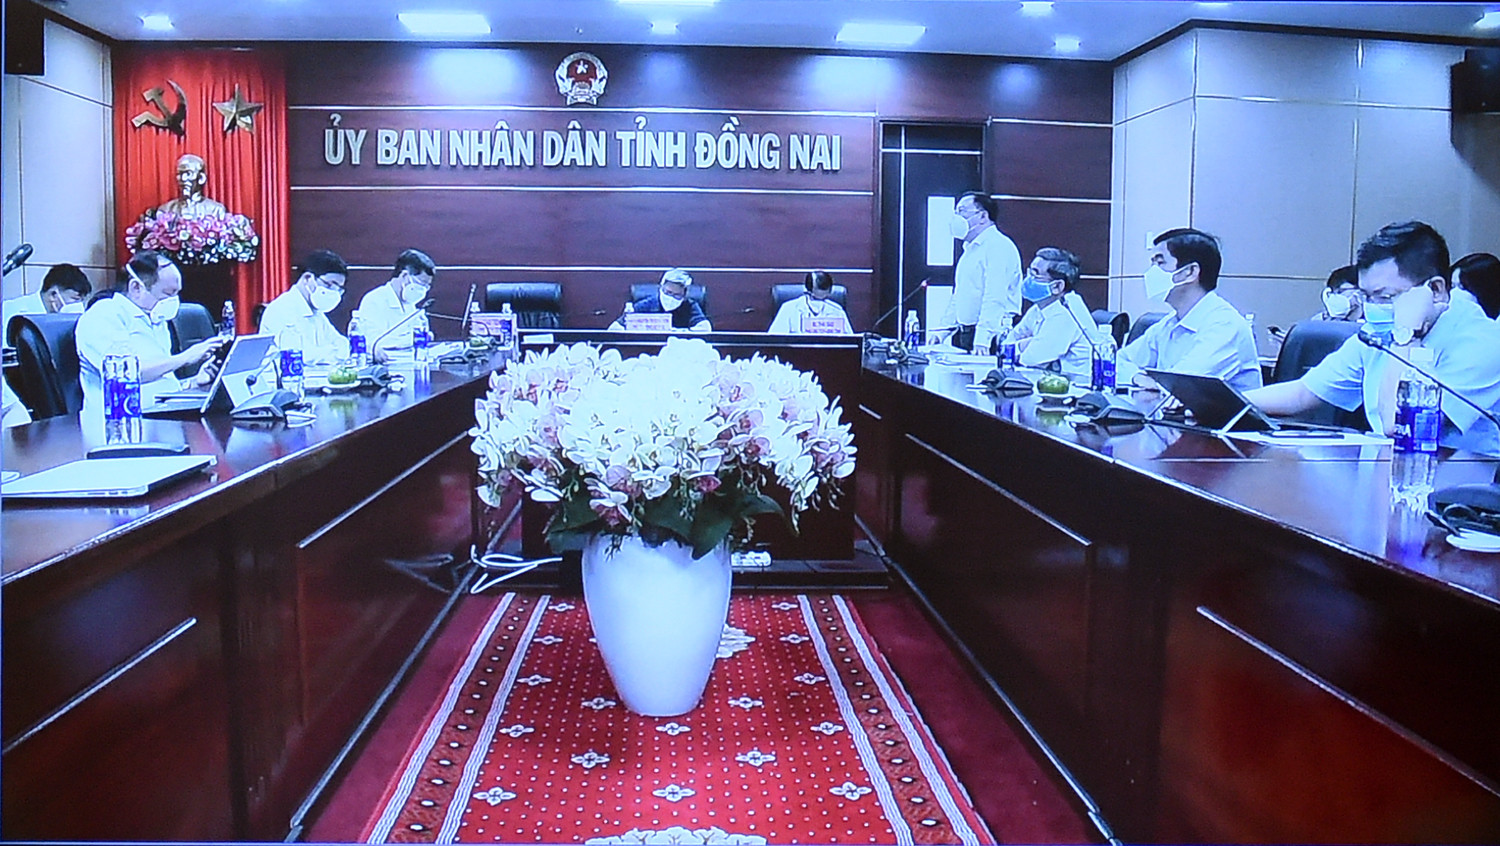 Giám đốc Sở Y tế Đồng Nai Phan Huy Anh Vũ phát biểu tại cuộc họp trực tuyến với lãnh đạo tỉnh Đồng Nai vào sáng 24/6 